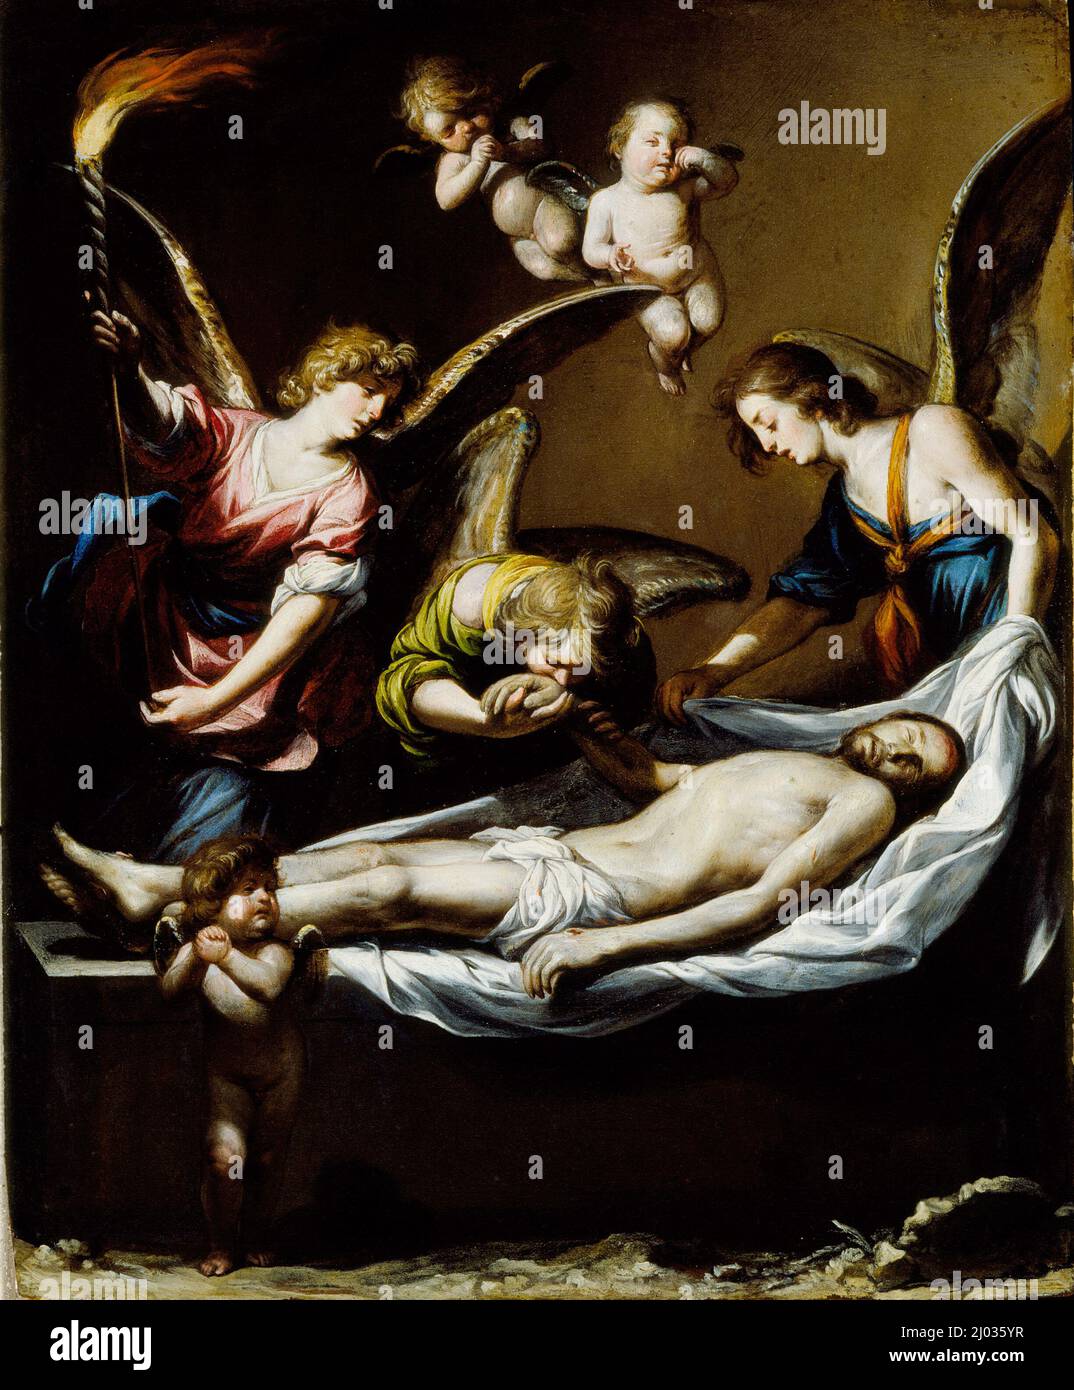 Toter Christus mit beklammenden Engeln. Antonio del Castillo y Saavedra (Spanien, 1616-1668). Spanien, 1650. Gemälde. Öl auf Kupfer Stockfoto